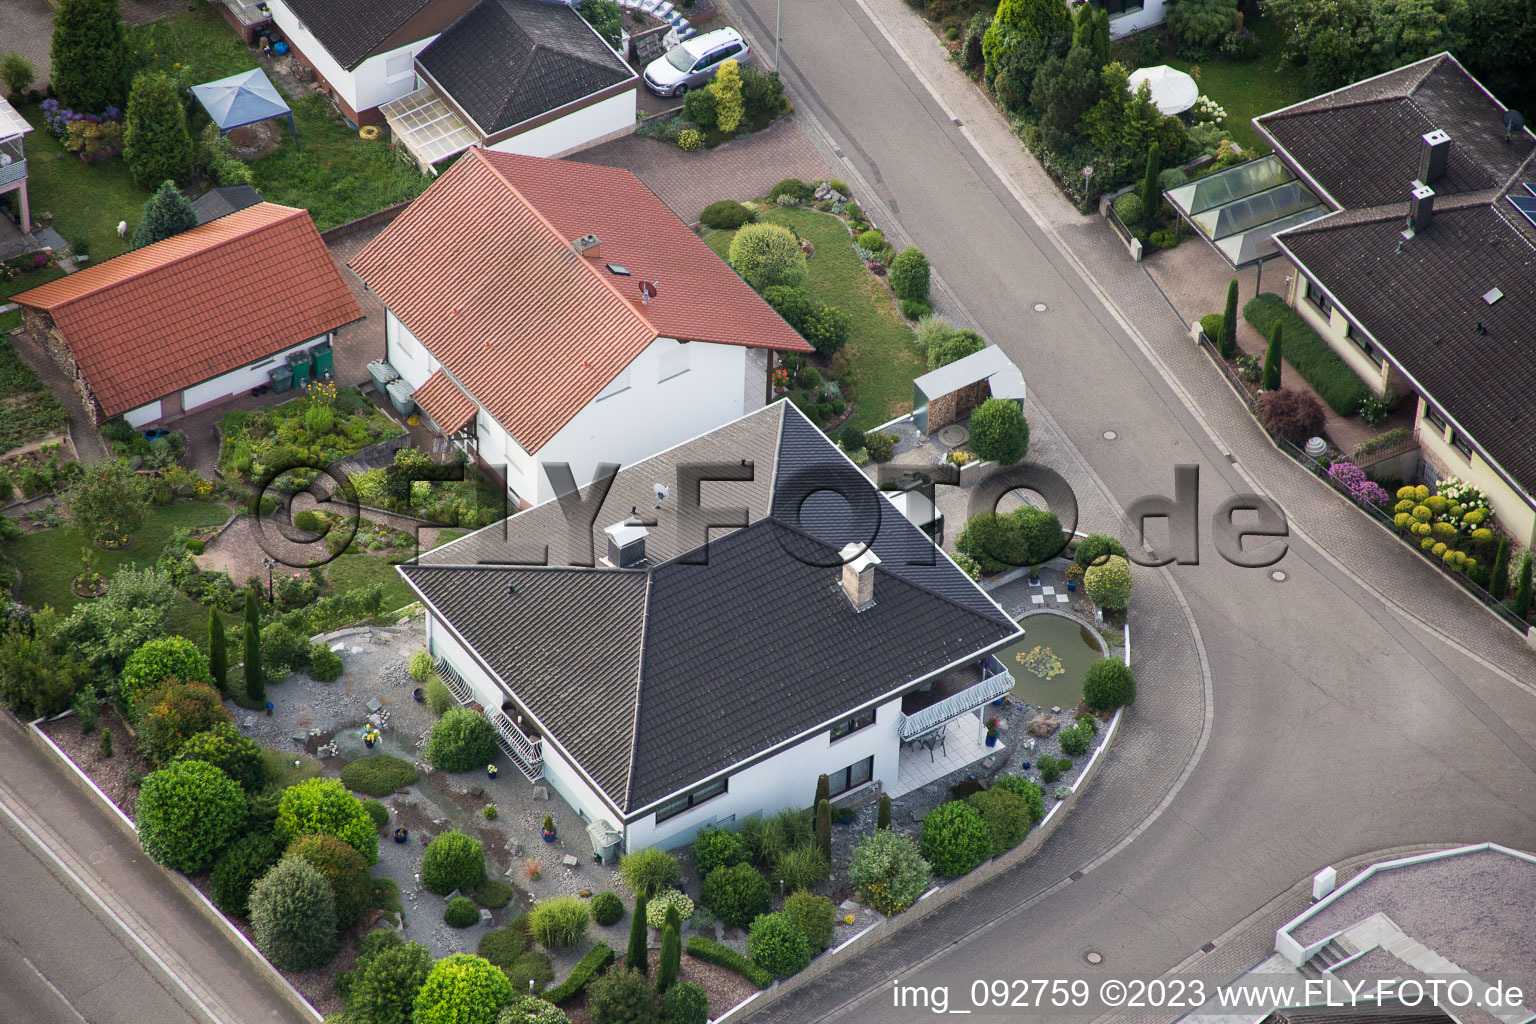 Photographie aérienne de Quartier Billigheim in Billigheim-Ingenheim dans le département Rhénanie-Palatinat, Allemagne